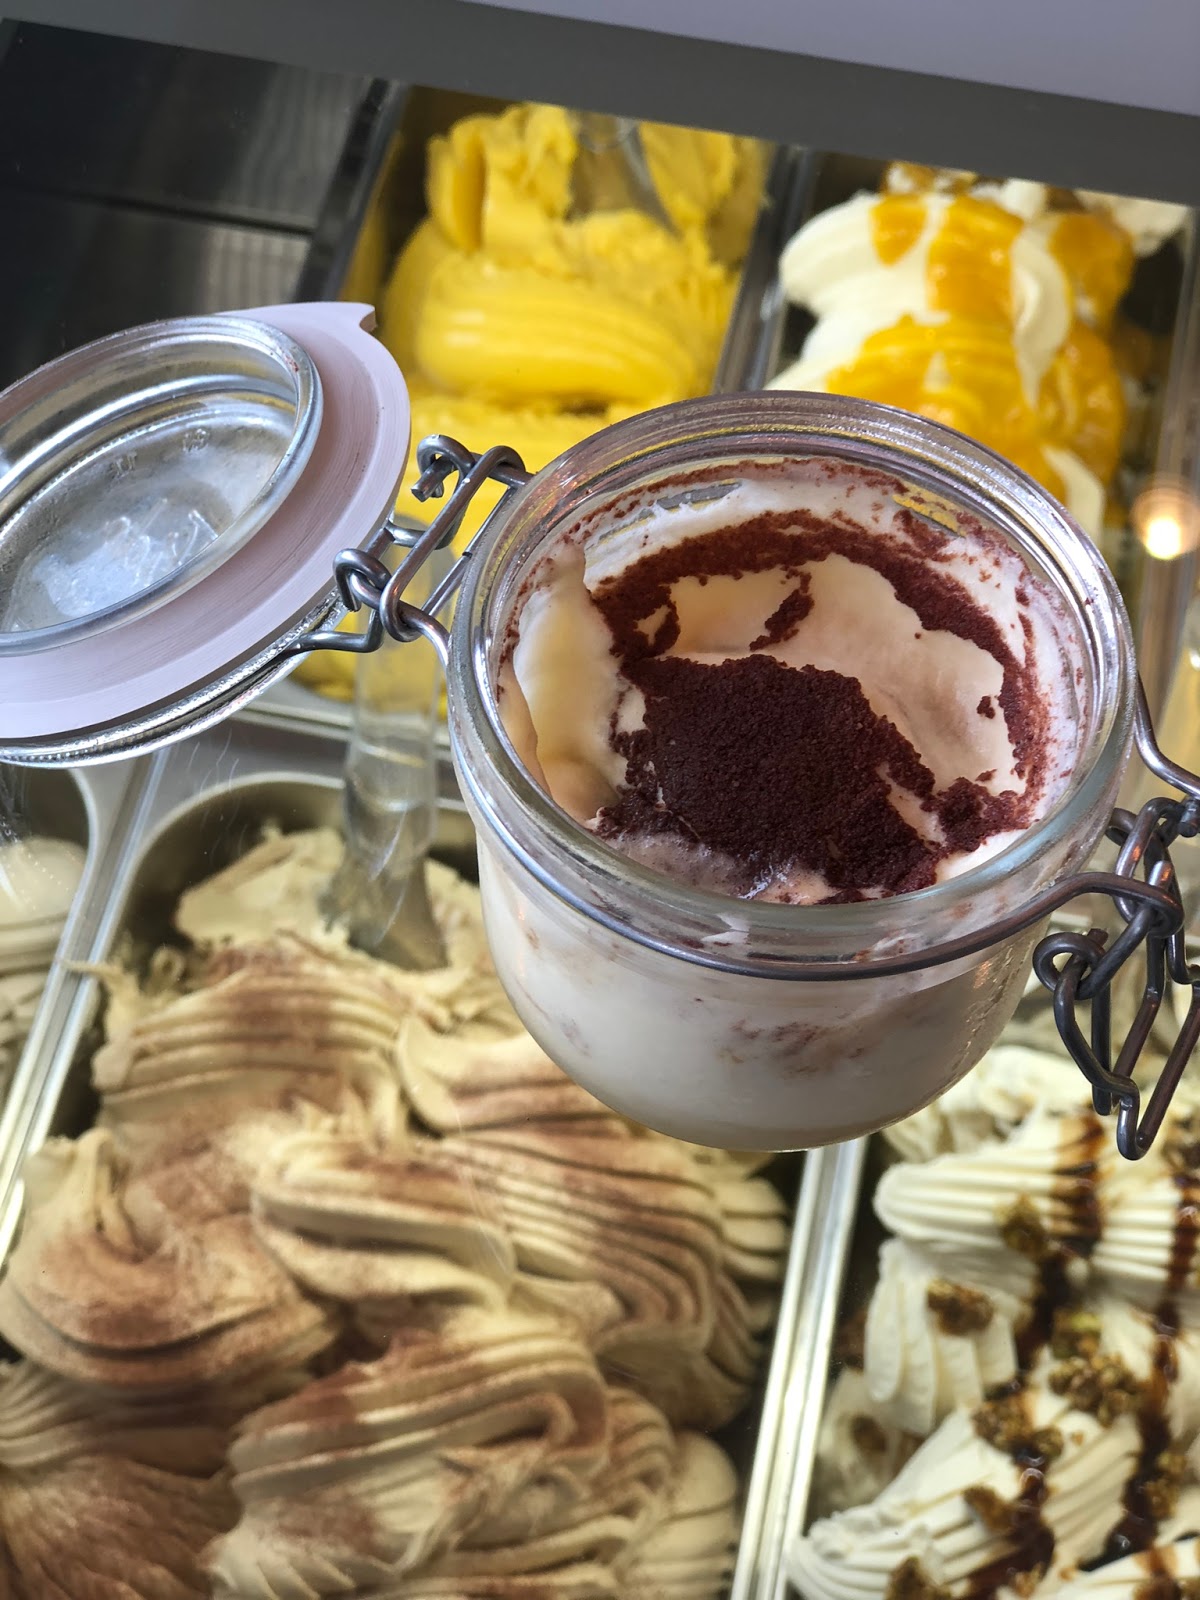 Cremeria Italiana traz o melhor gelato do mundo para Brasília